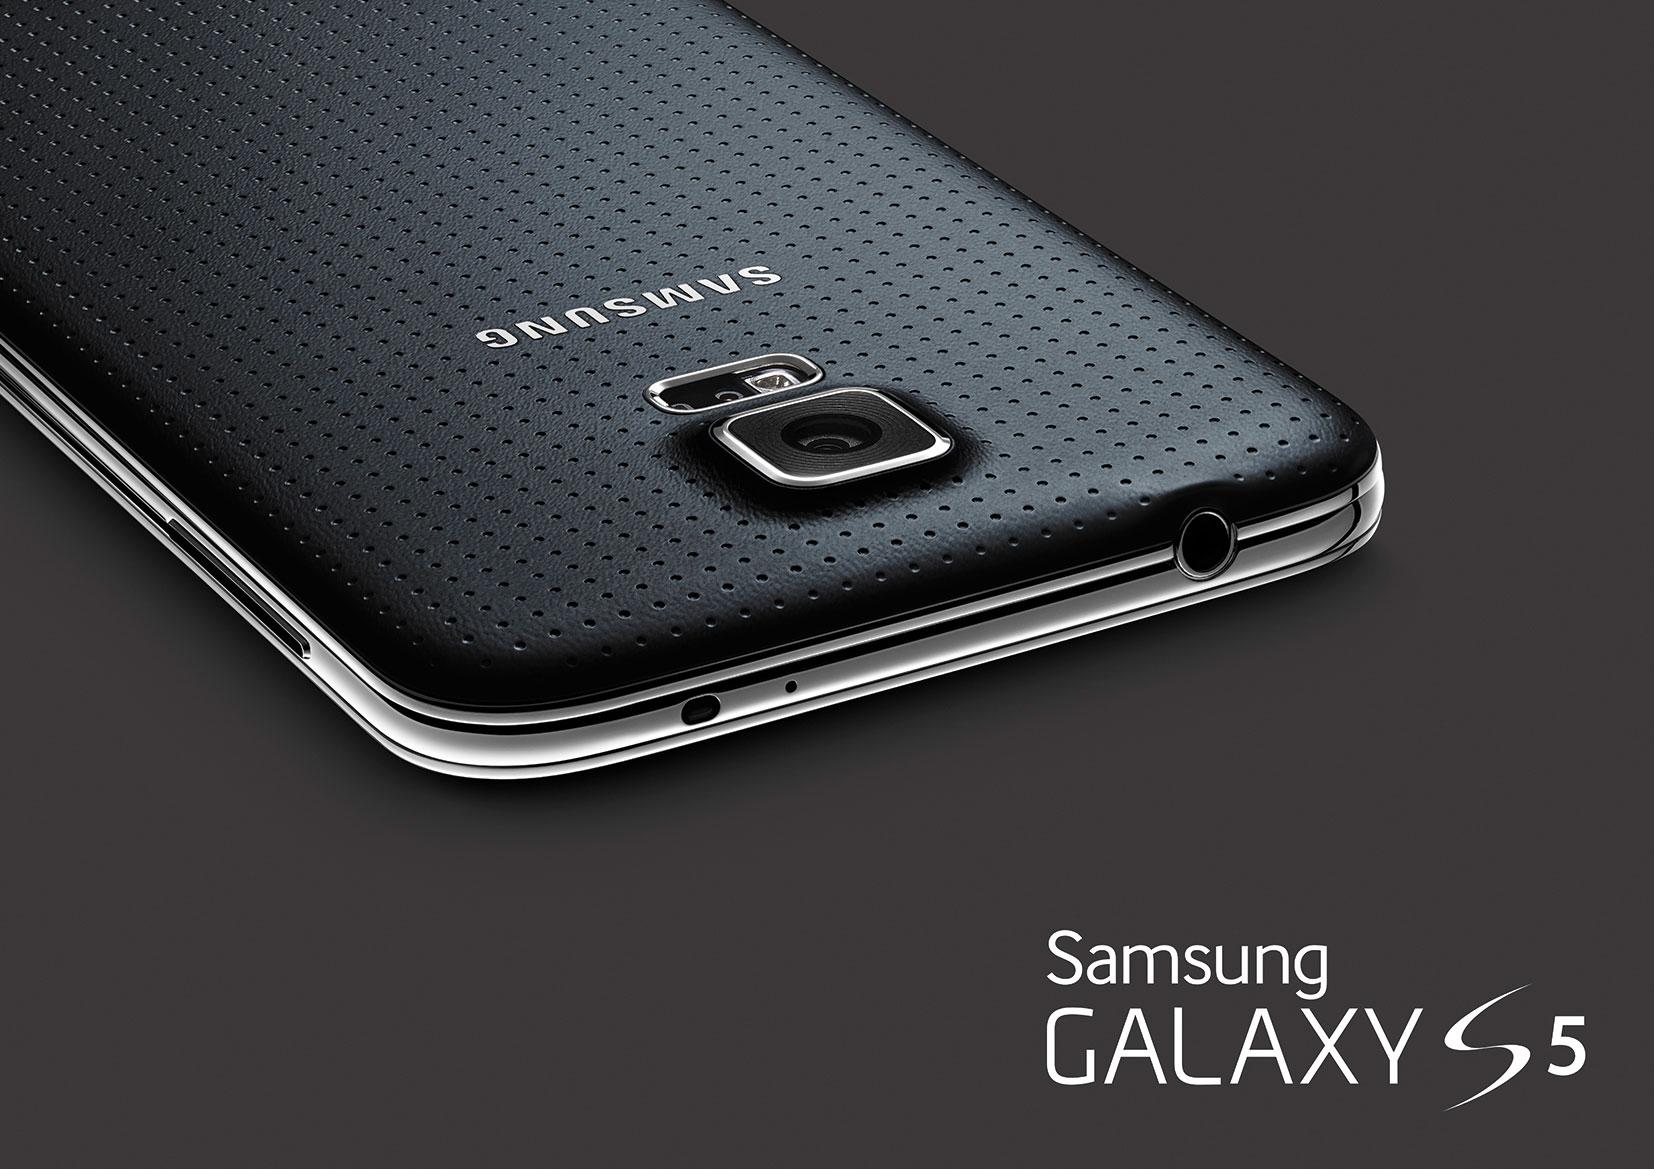 Samsung Akhirnya Resmi Perkenalkan Galaxy S5!